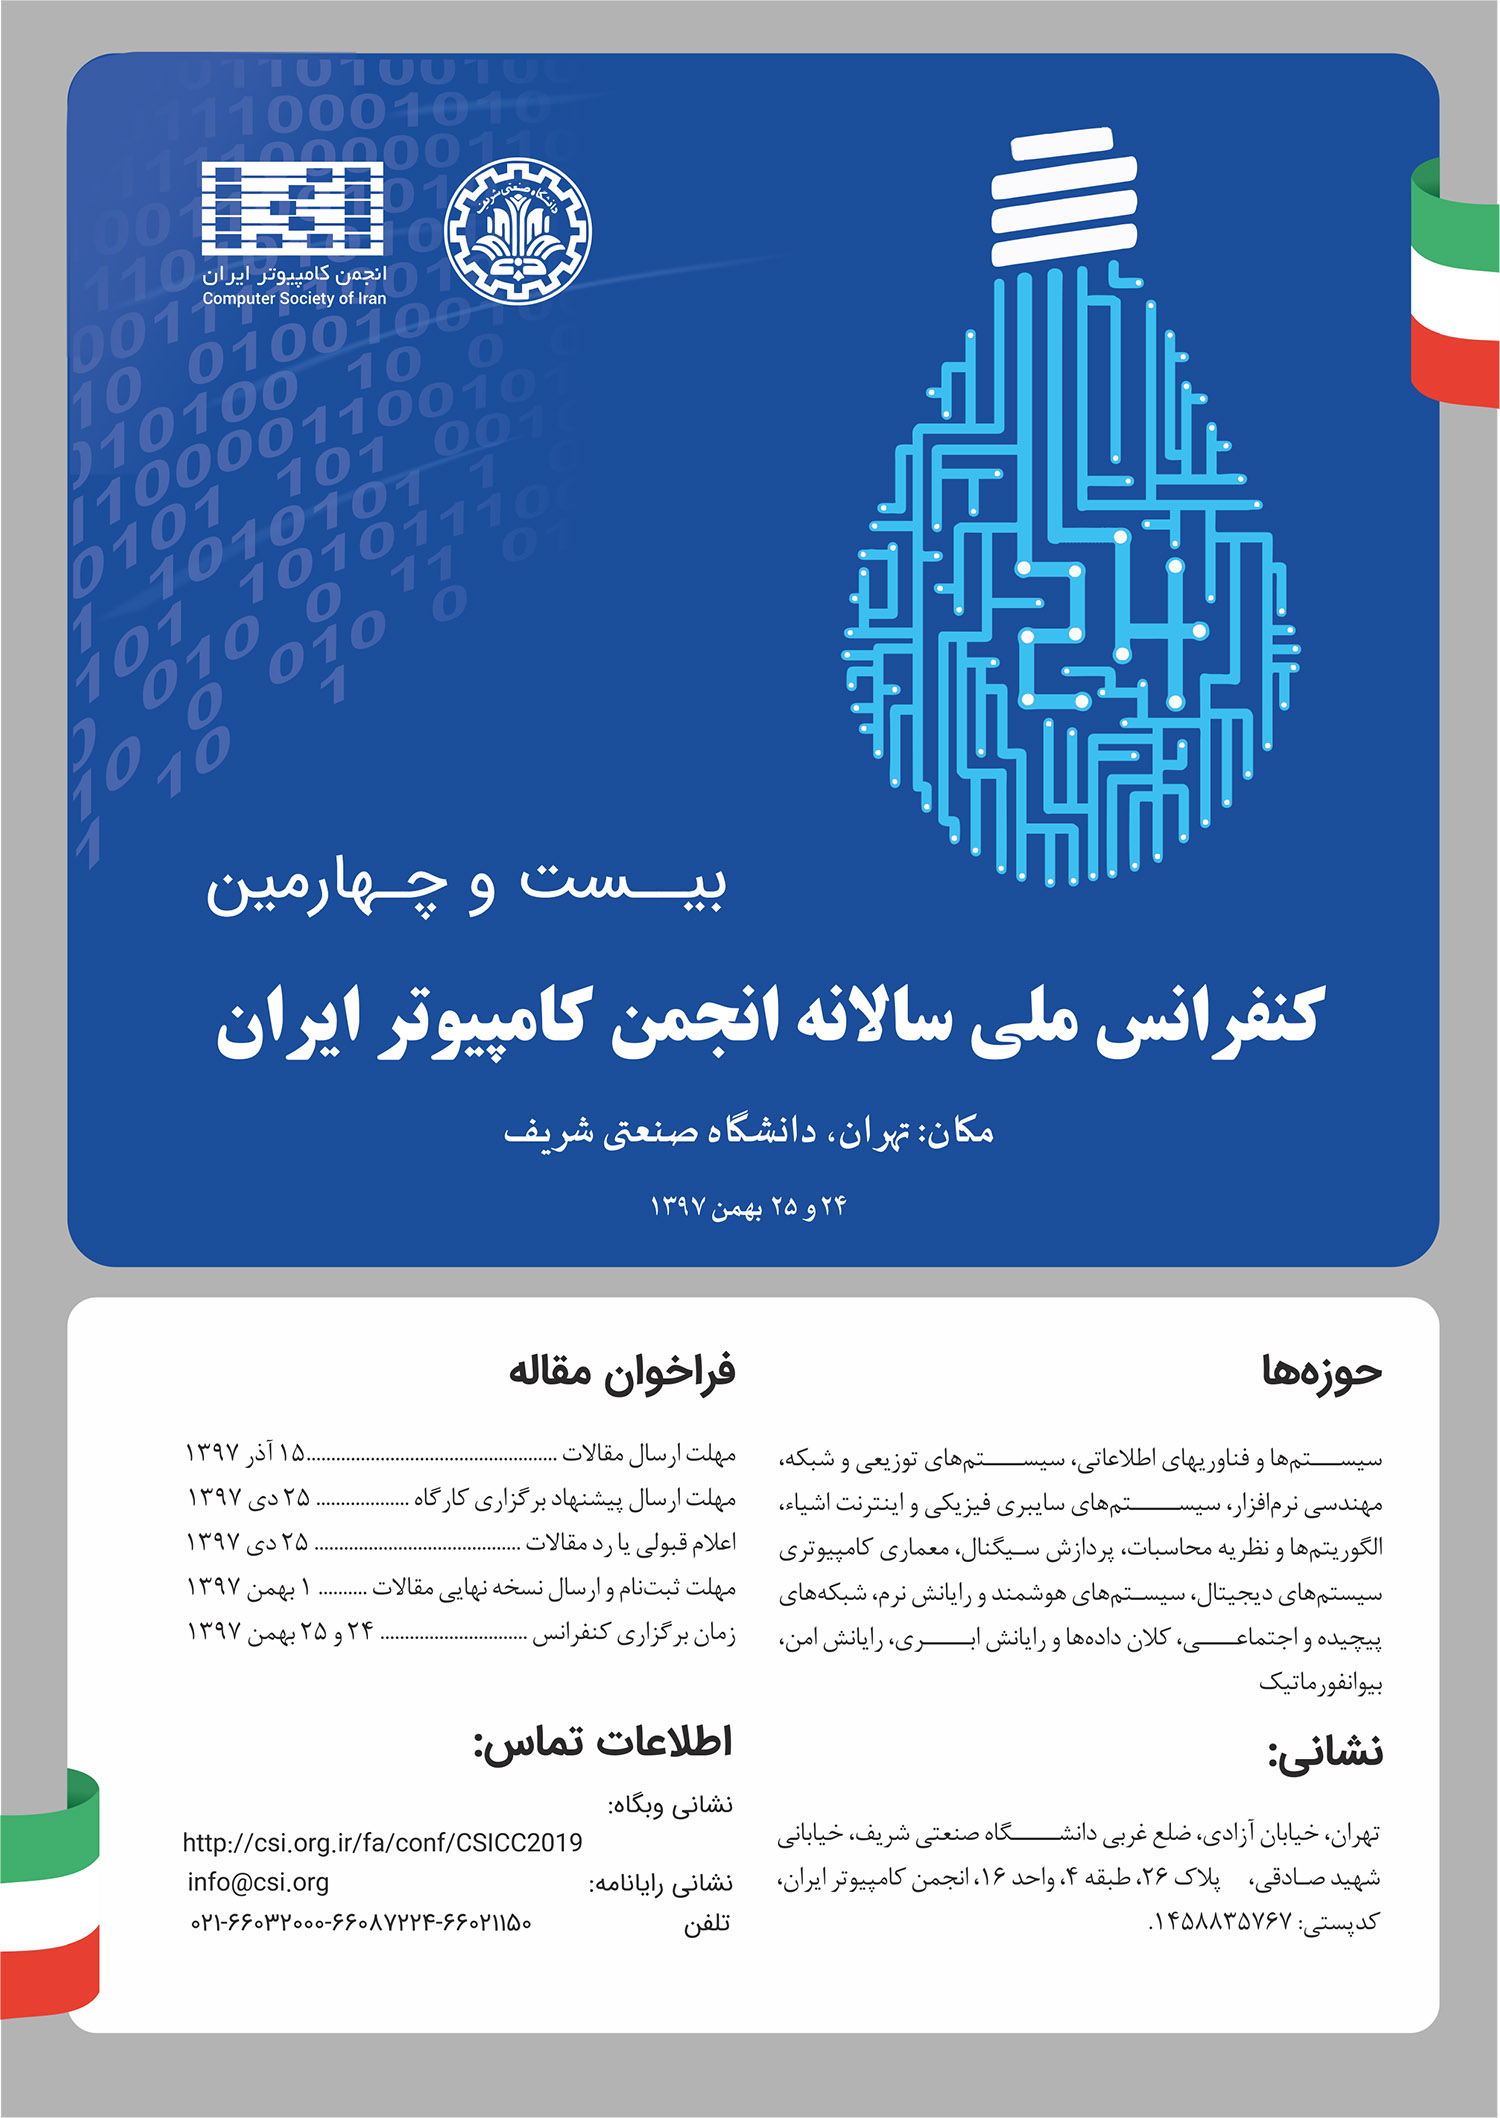  بیست و چهارمین کنفرانس ملی سالانه انجمن کامپیوتر ایران 